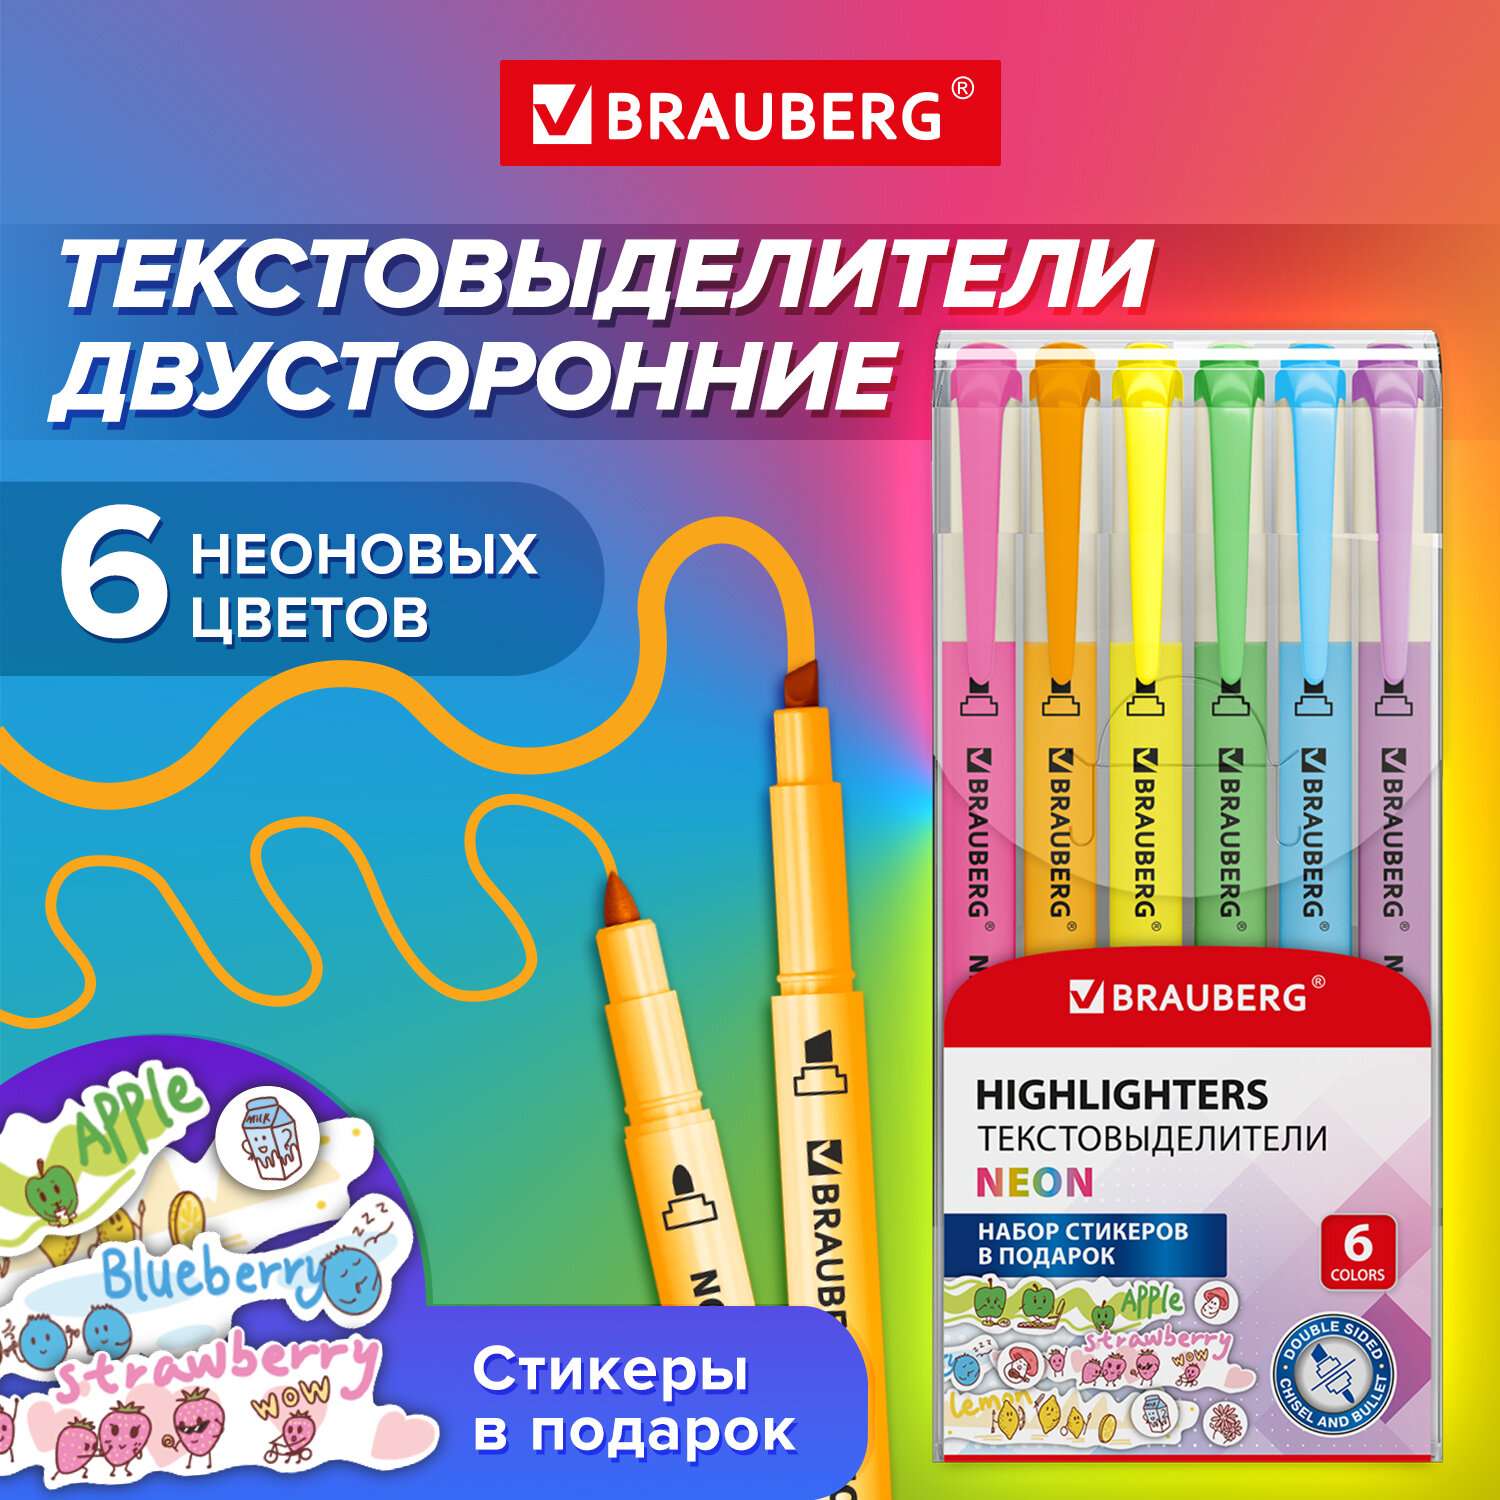 Текстовыделители Brauberg маркеры двухсторонние набор неоновые 6 цветов - фото 2